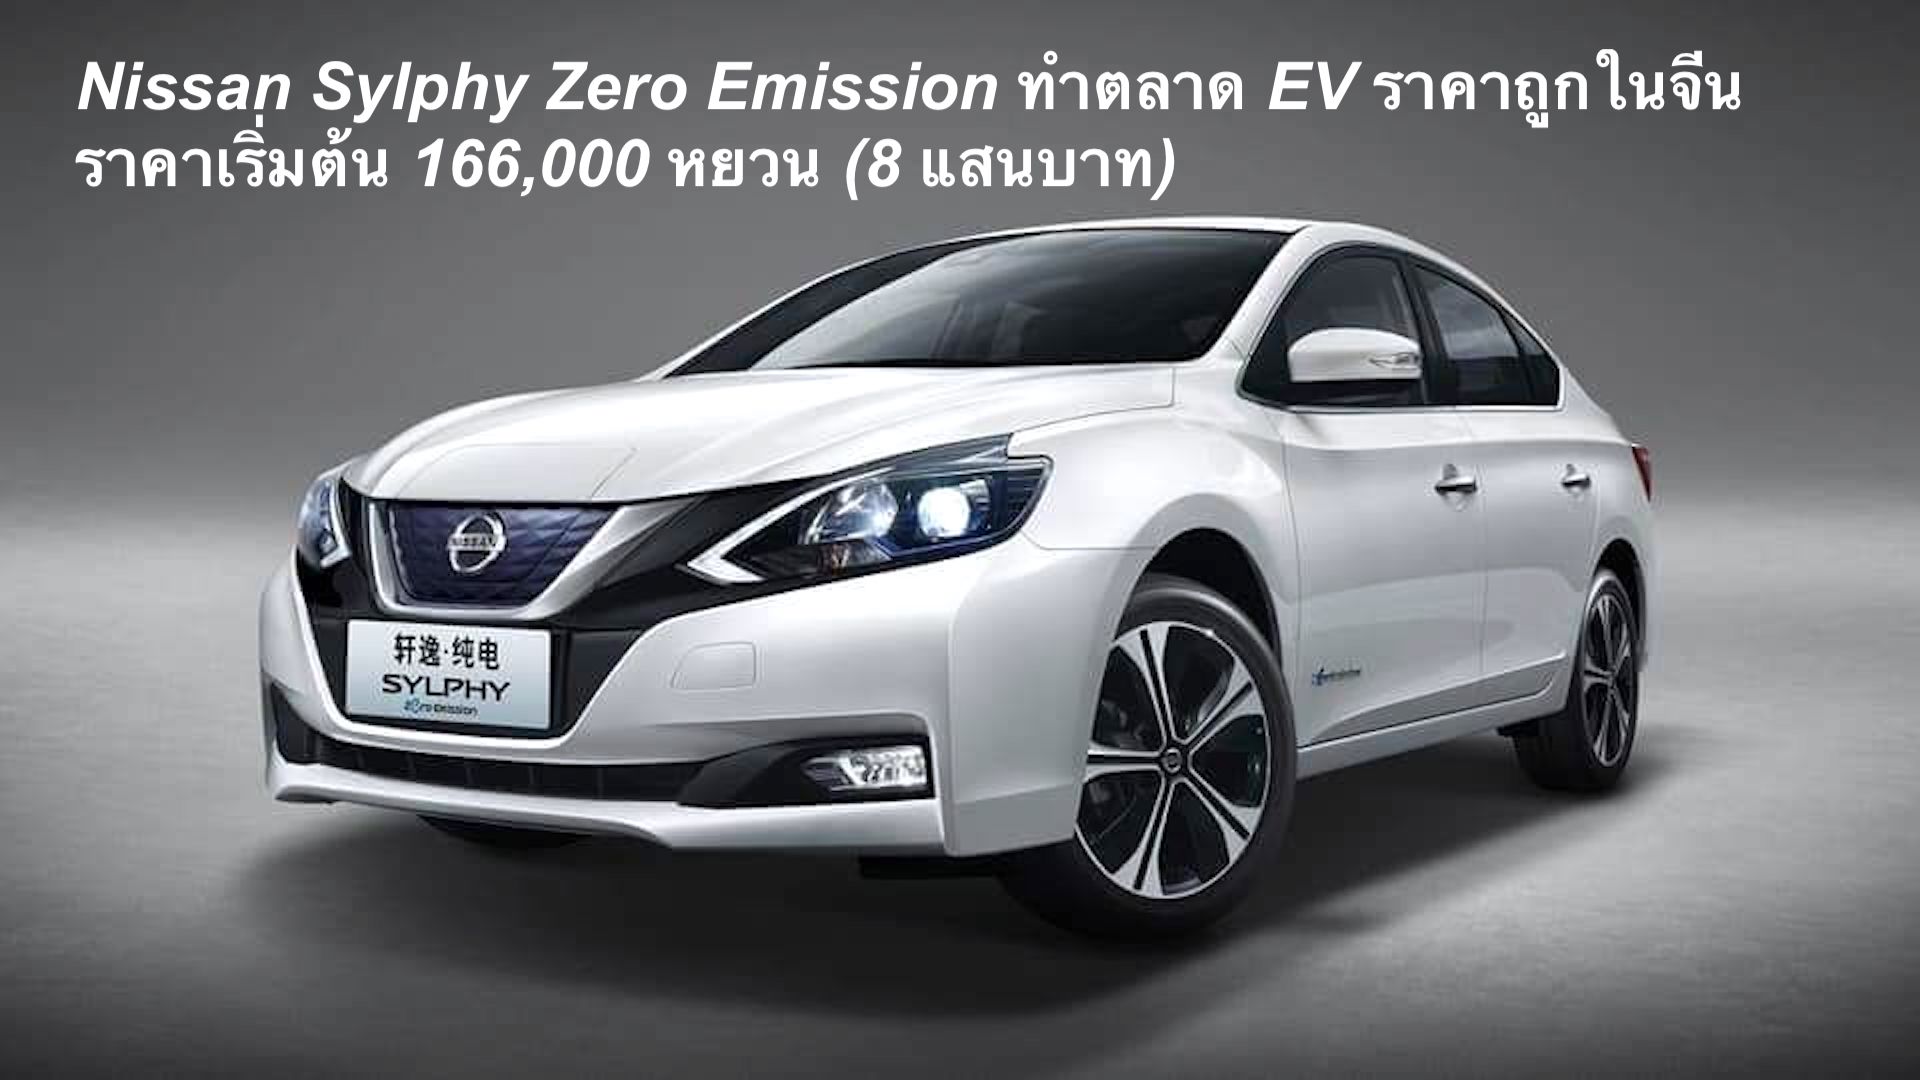 นิสสันปล่อย Nissan Sylphy Zero Emission ทำตลาด EV ราคาถูกในจีน ราคาเริ่มต้น 166,000 หยวน (8 แสนบาท) พิสัย 338 กม./ชาร์จ